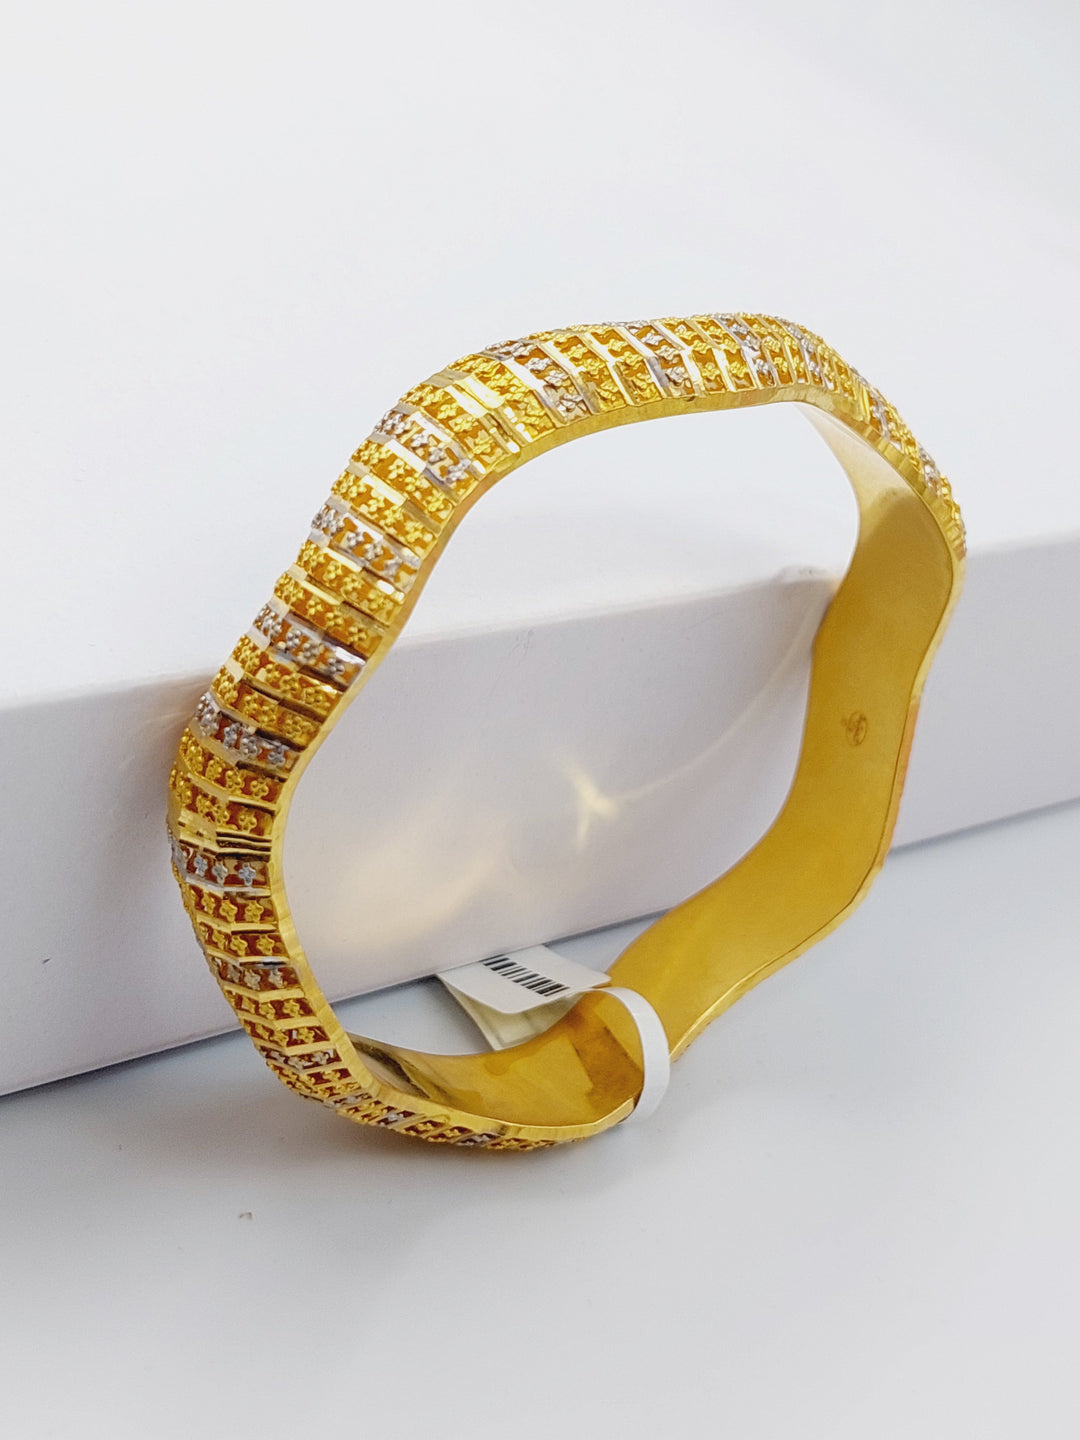 21K Colored Kuwaiti Bangle Made of 21K Yellow Gold by Saeed Jewelry-اسوار-سحب-كويتي-ملون-مقاس-صغير18